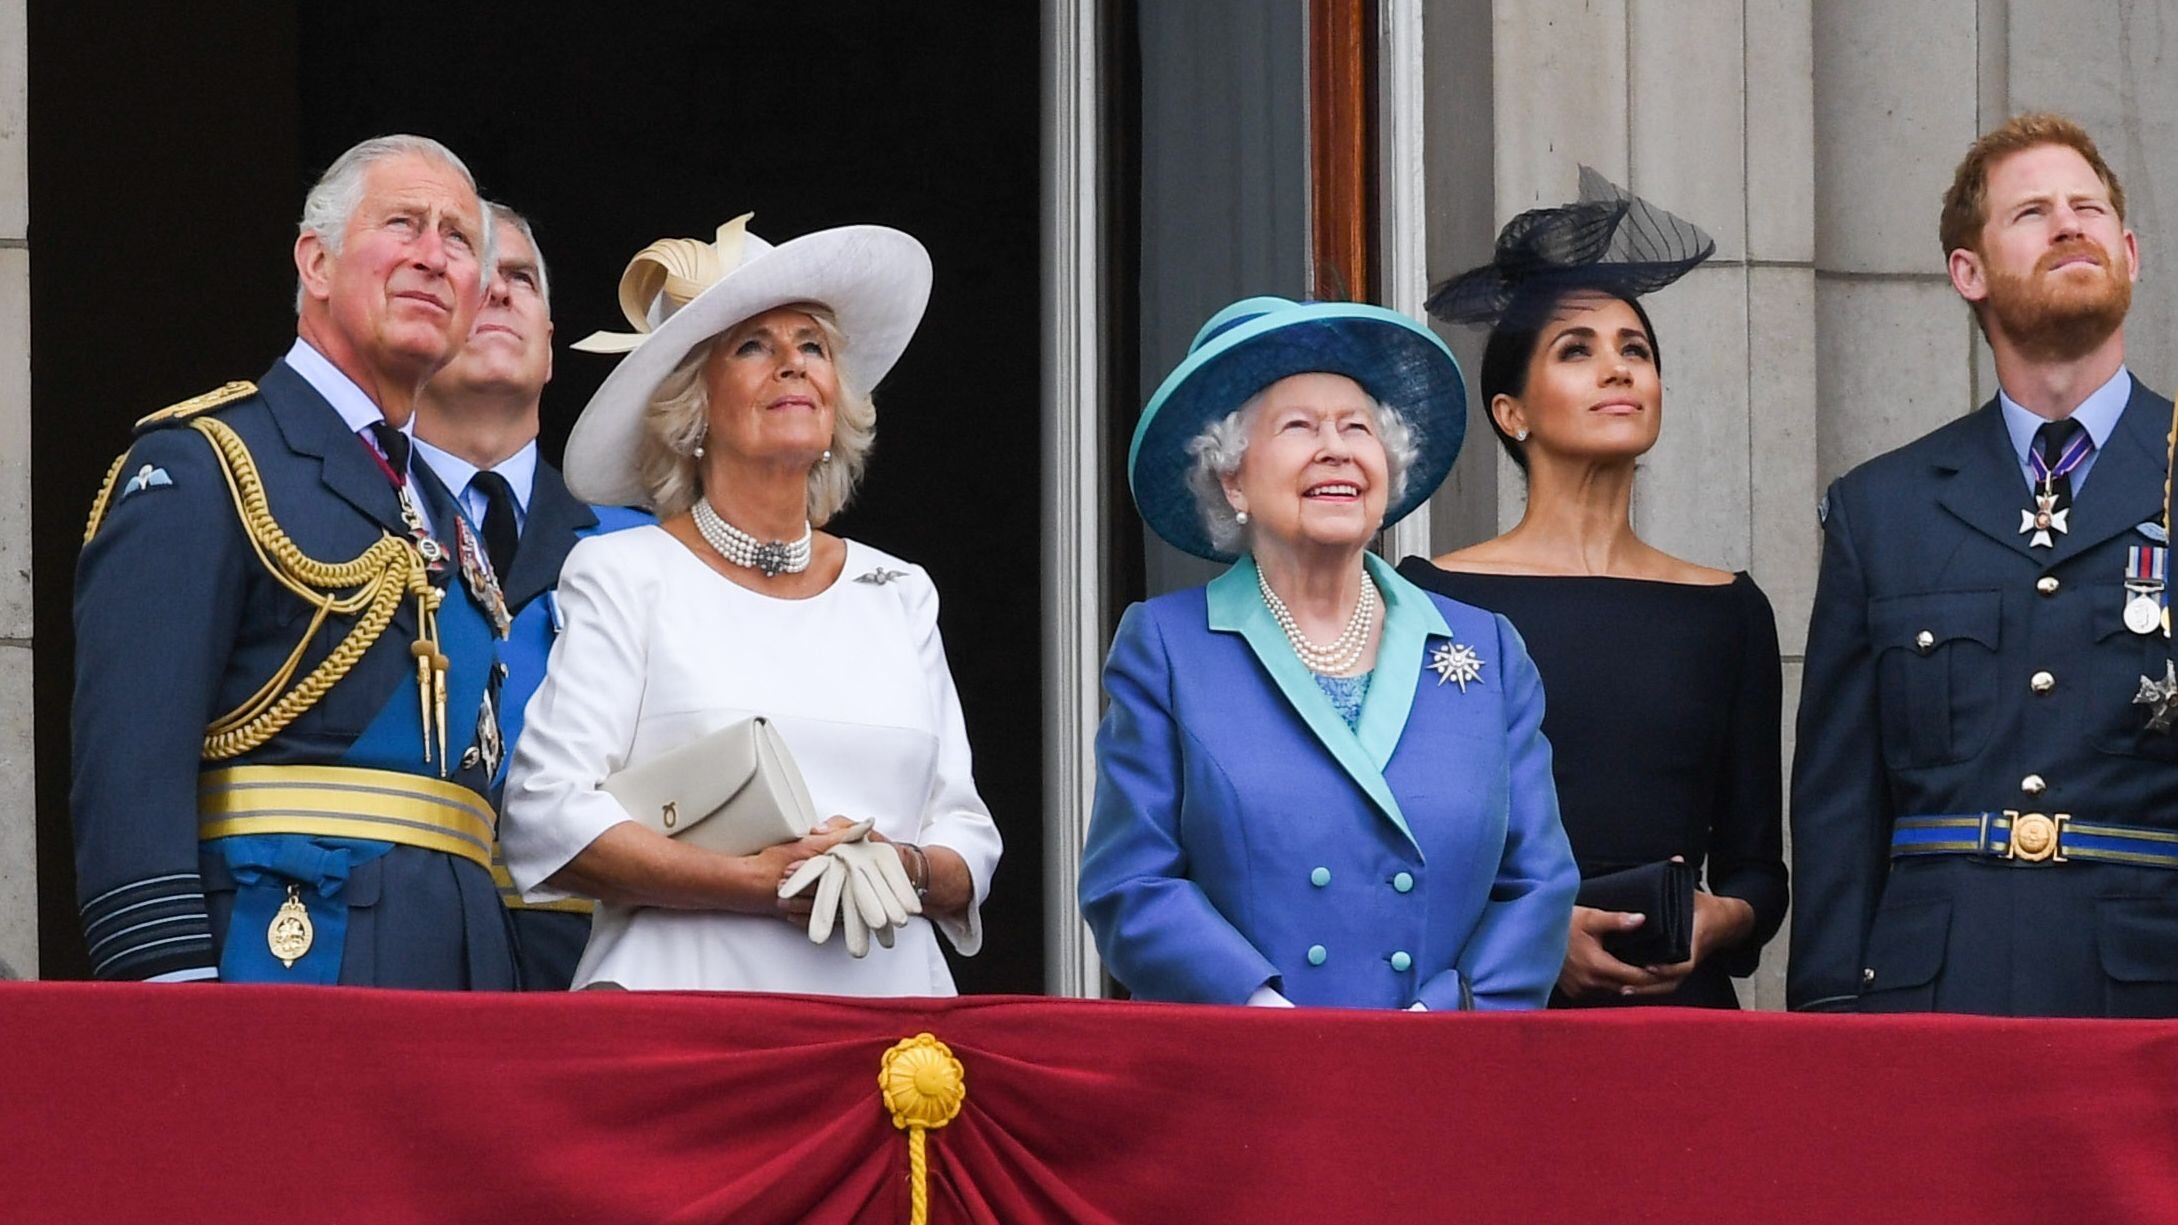 De izquierda a derecha, el príncipe Carlos, el príncipe Andrés, Camilla Parker Bowles, la reina Isabel, Enrique de Inglaterra y Meghan Markle, en Londres en julio de 2018.